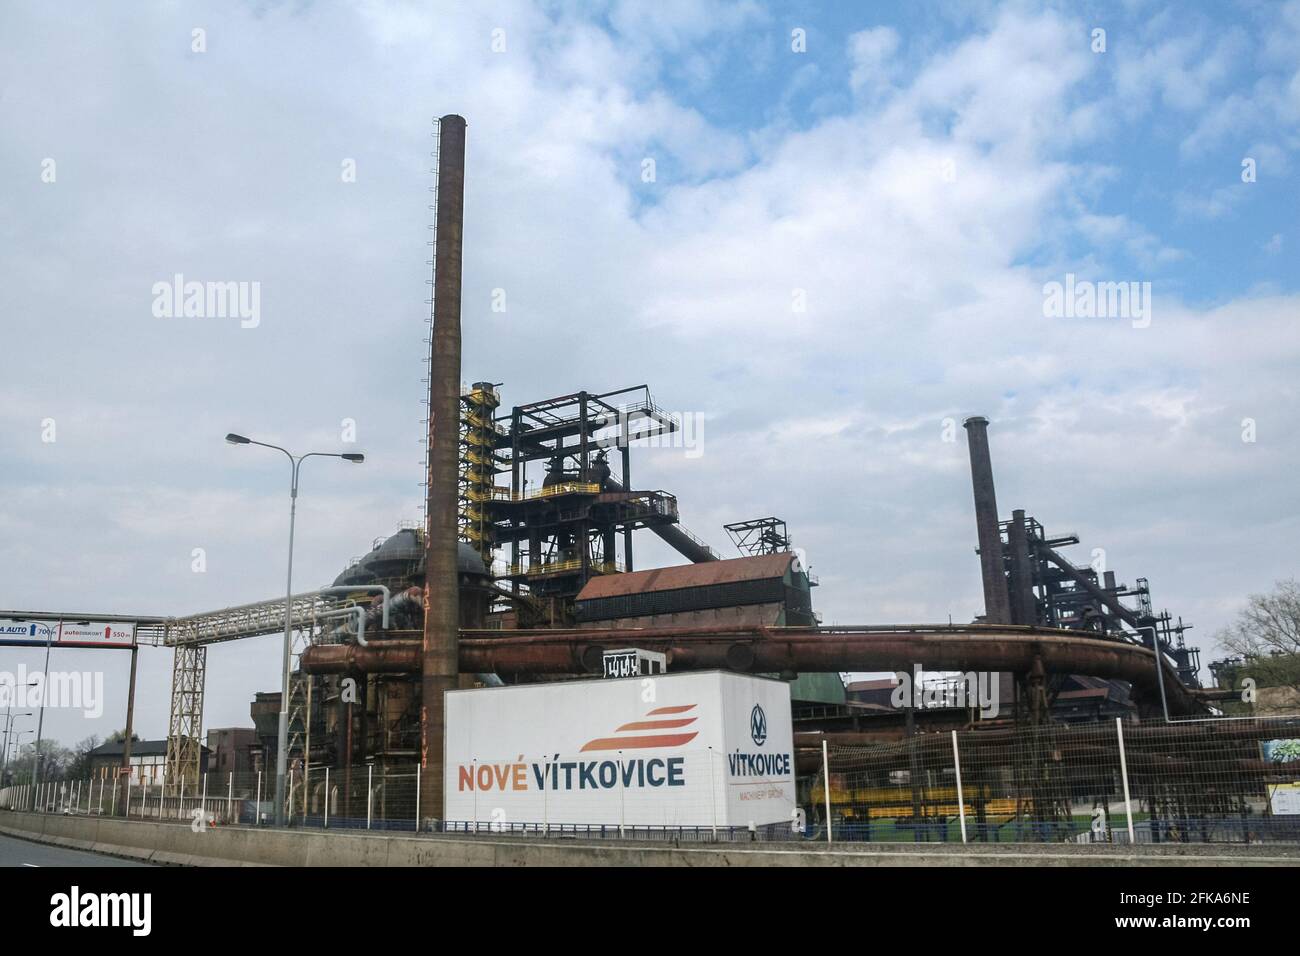 Photo de l'entrée du complexe Nove Vitkovice à Ostrava, République tchèque. Nove Vitkovice est un programme de redéveloppement de la société industrielle de Vitkovice Banque D'Images